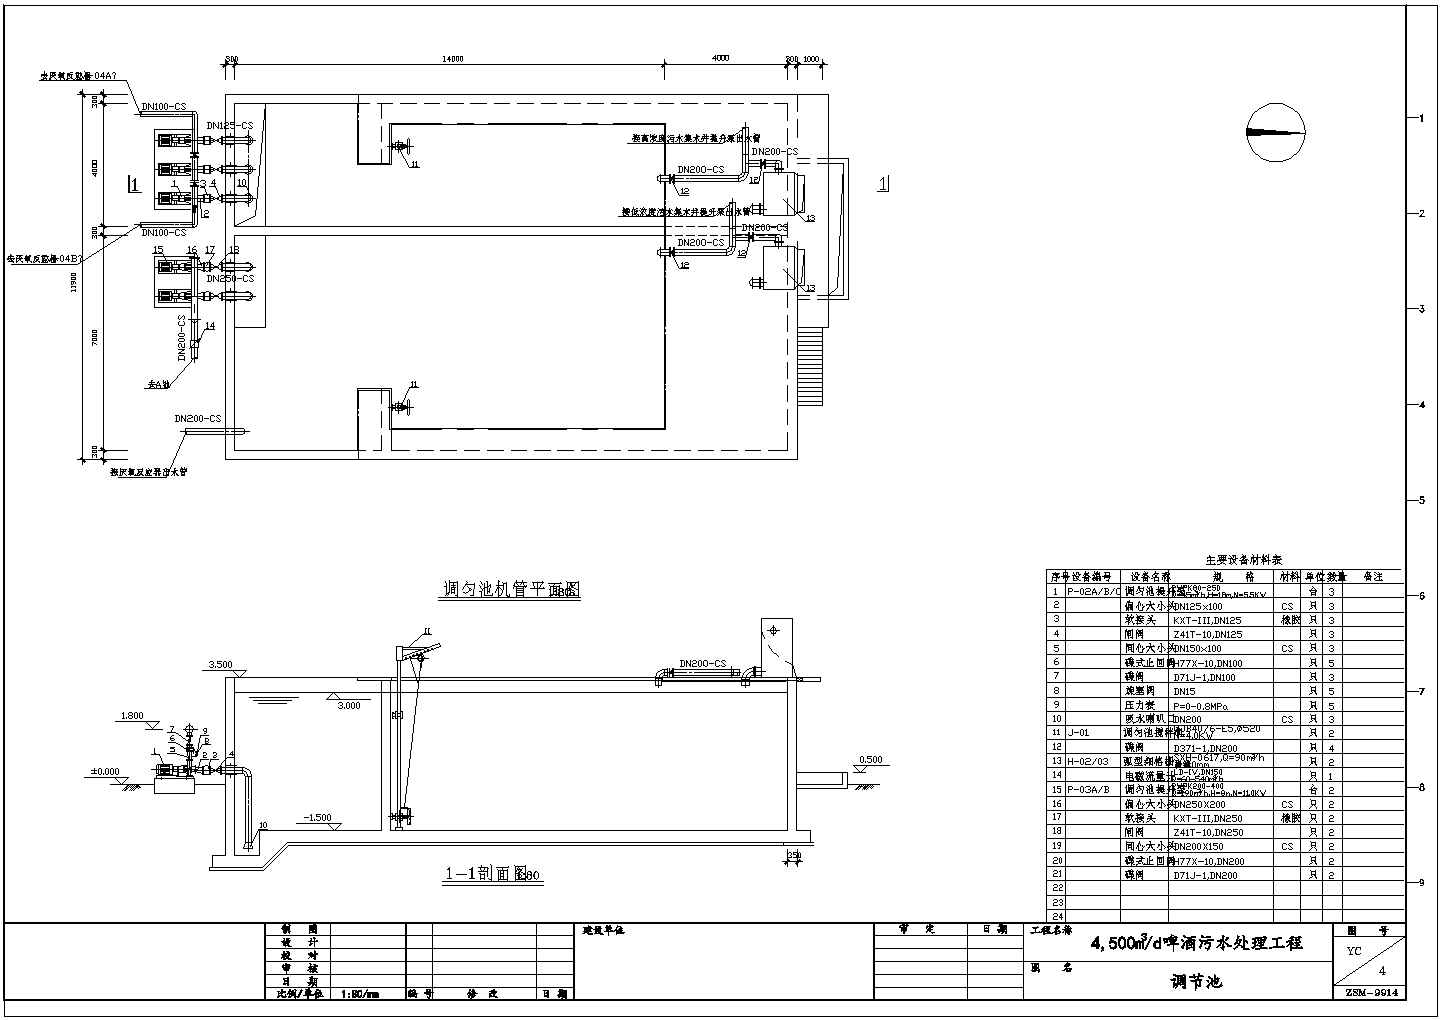 4500m3/d啤酒污水处理工程设计图纸